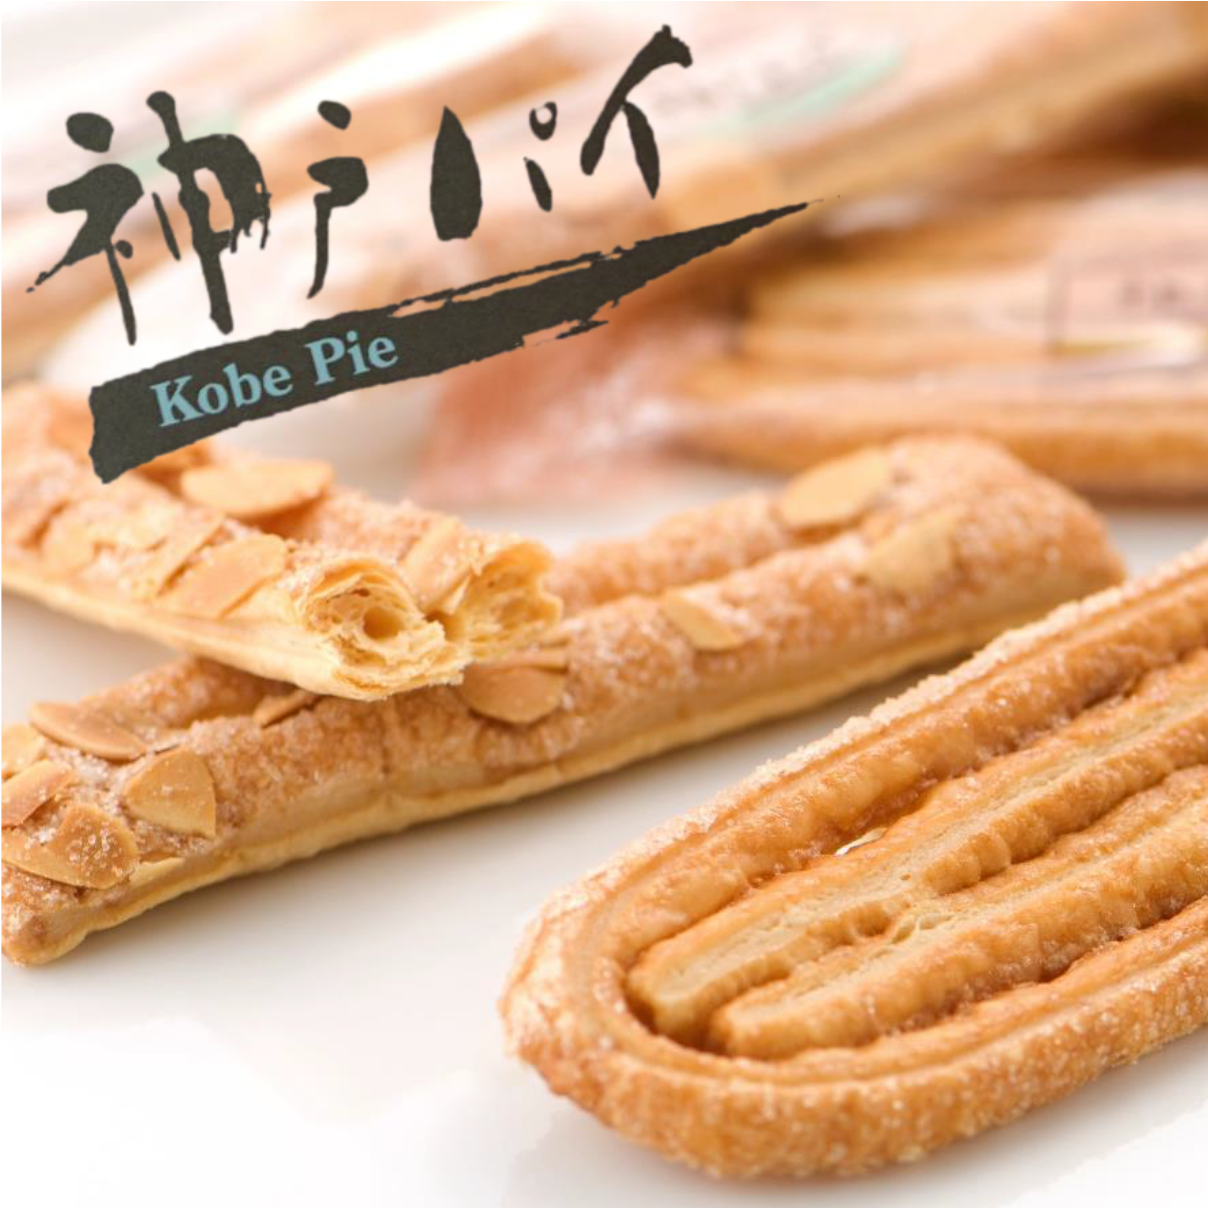 神戸パイは、厳選した材料をもとにパイ生地をつくり、薄くのばし、幾重にも重ねて焼き上げております。そのため、サクサクとした軽い食感となっております。